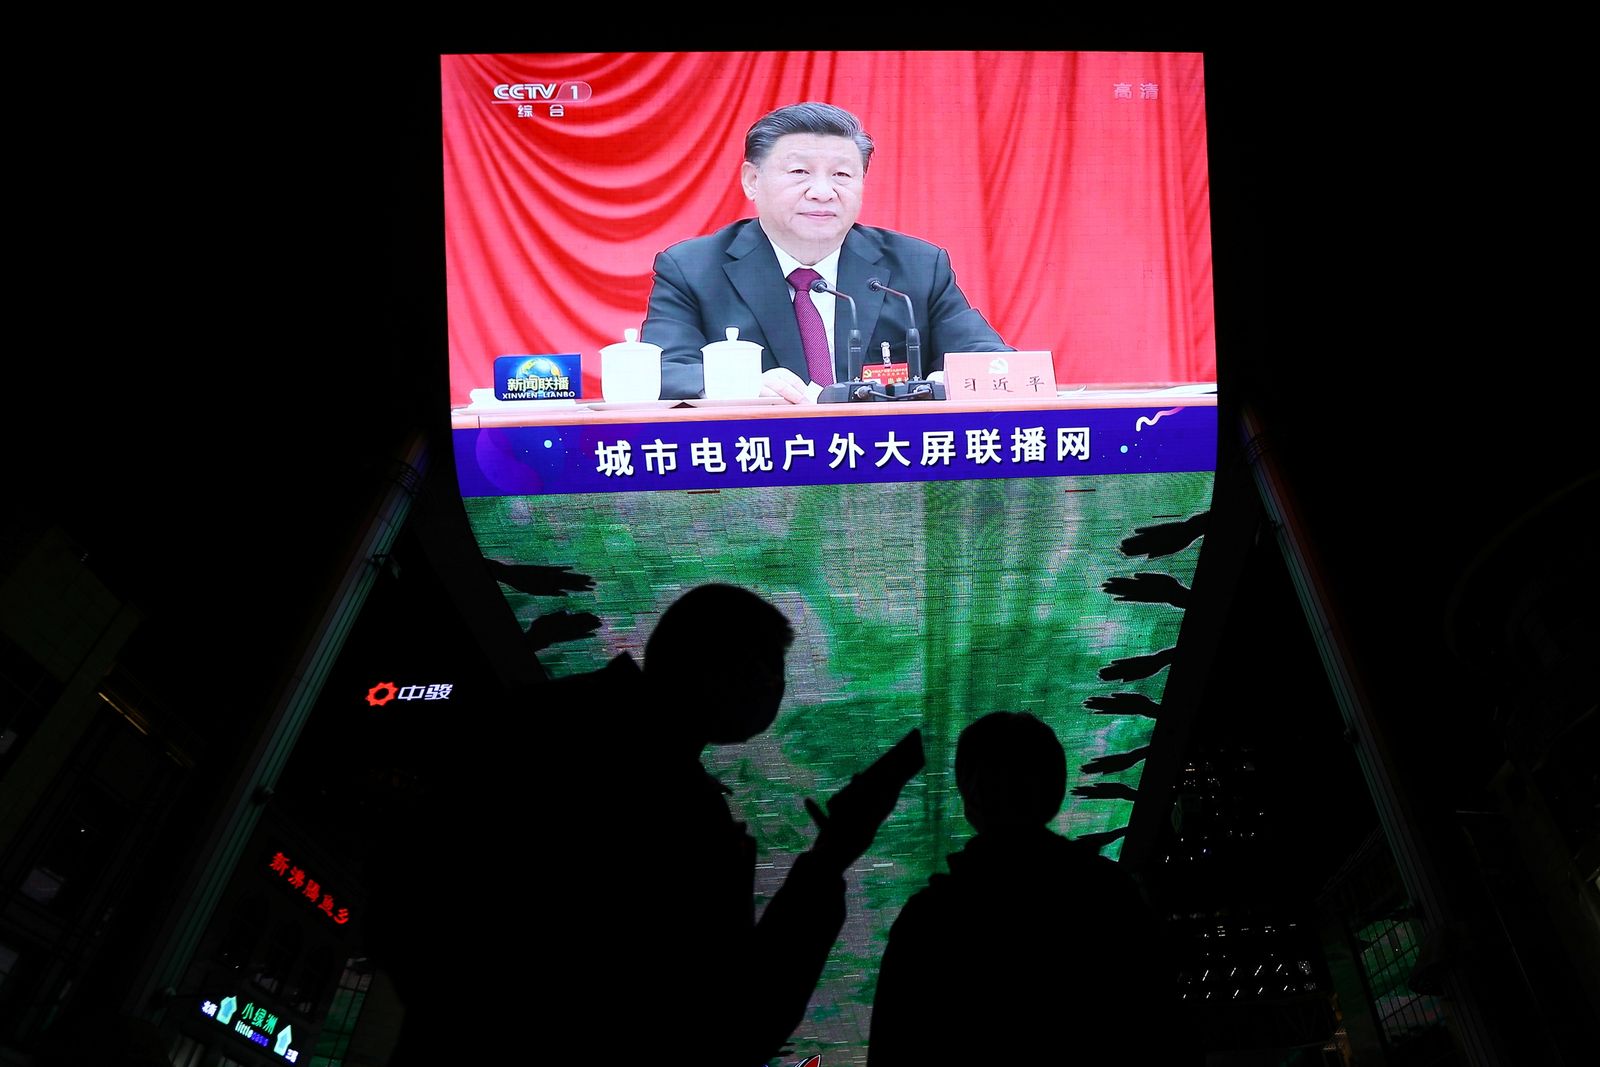 شاشة عملاقة تُظهر الرئيس الصيني شي جين بينج خلال اجتماع اللجنة المركزية للحزب الشيوعي في بكين - 11 نوفمبر 2021 - REUTERS